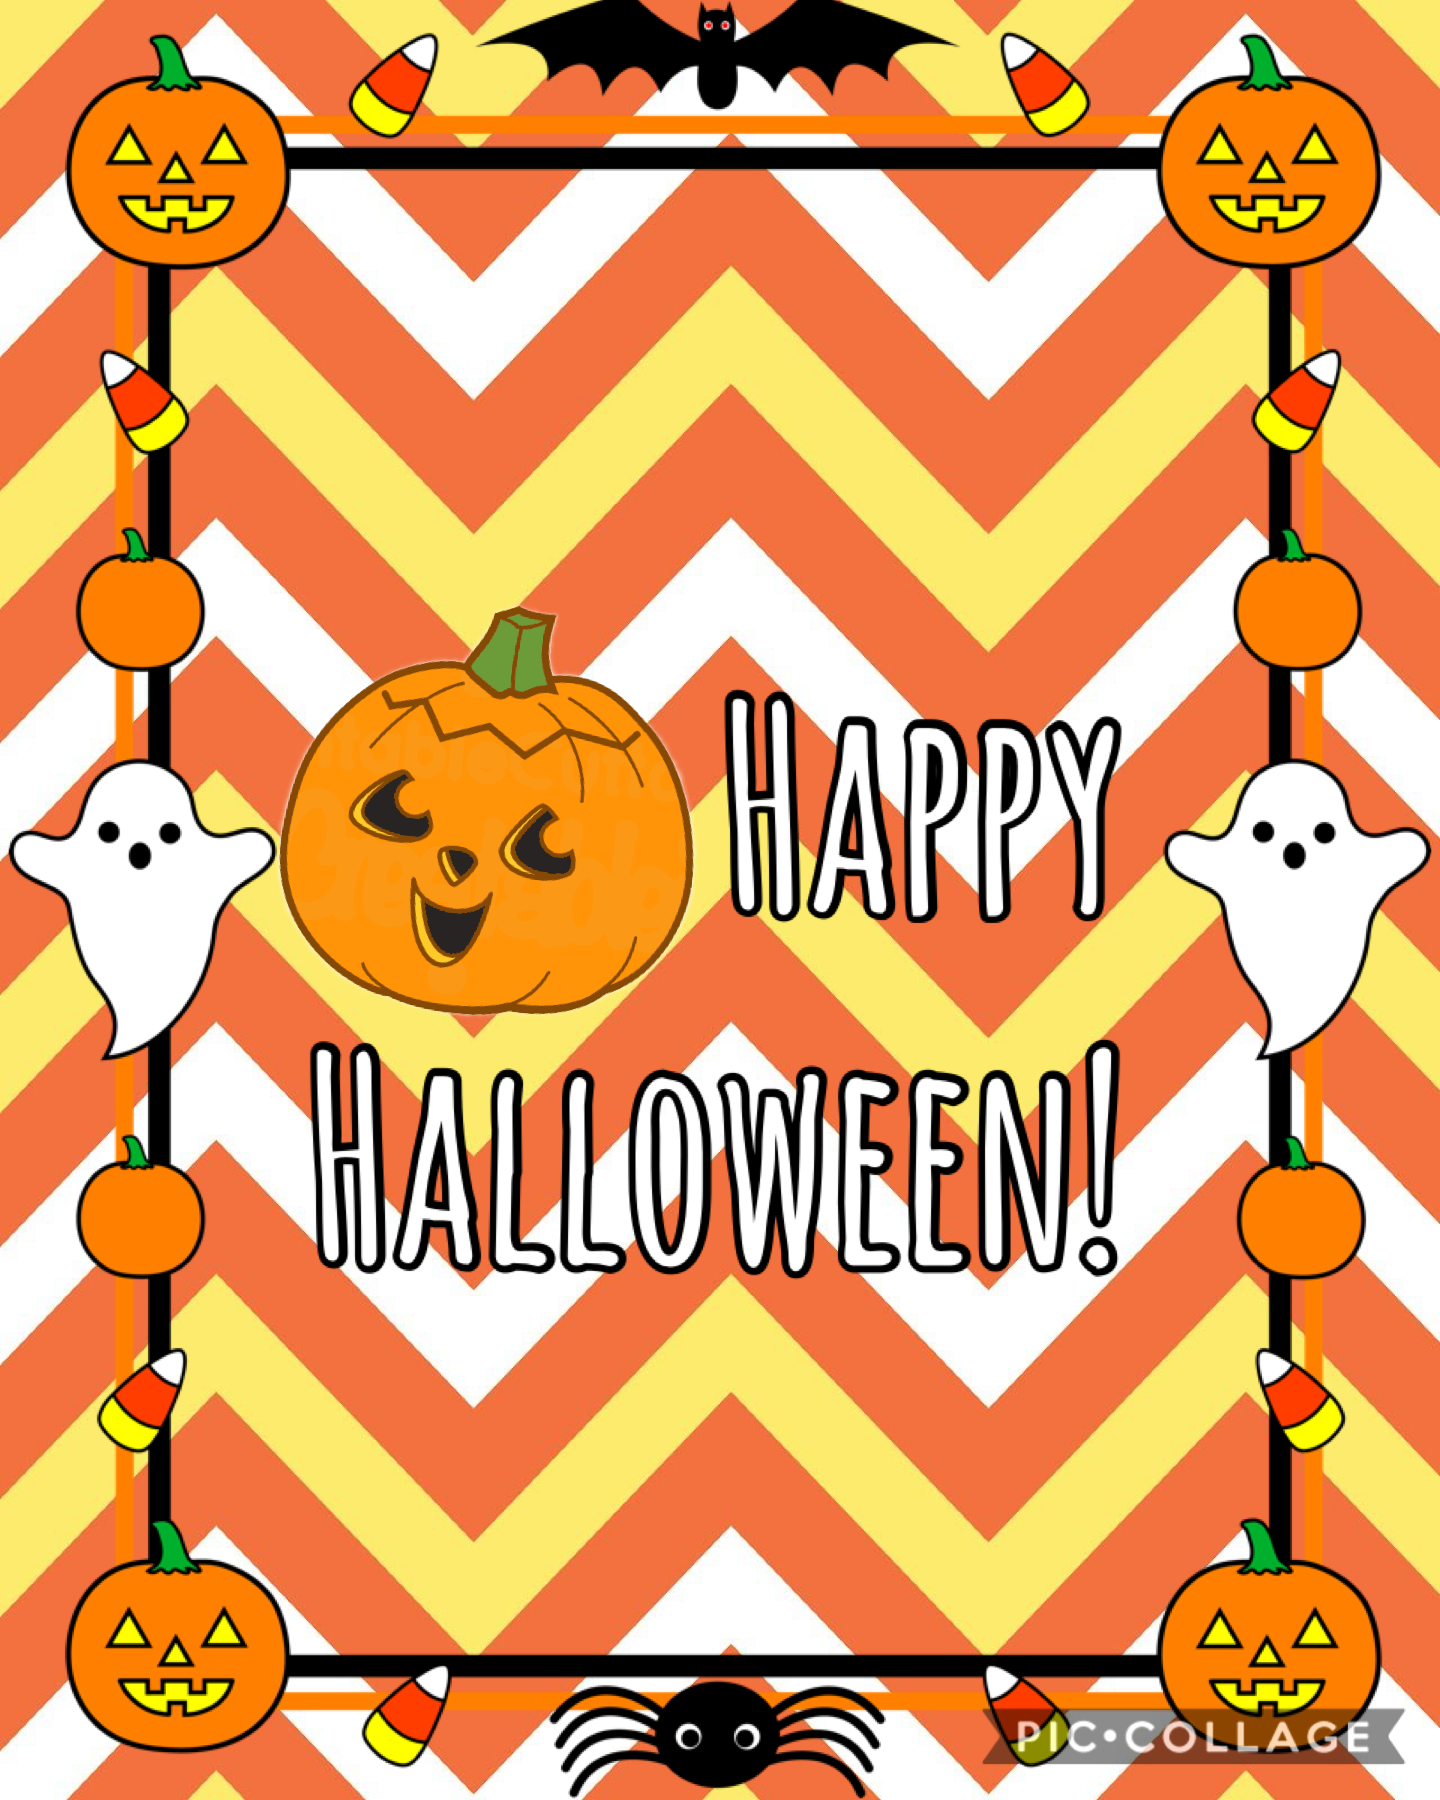 Click for a Halloween Surprise! (if it works.) 


Happy Halloween 🎃


▬▬▬.◙.▬▬▬
═▂▄▄▓▄▄▂
◢◤ █▀▀████▄▄▄▄◢◤
█▄ █ █▄ ███▀▀▀▀▀▀▀╬
◥█████◤
══╩══╩═
╬═╬
╬═╬ 
╬═╬    Just dropped down to say
╬═╬    s̲p̲o̲o̲k̲y̲ s̲c̲a̲r̲y̲ s̲k̲e̲l̲e̲t̲o̲n̲s̲
╬═╬    
╬═╬☻/ 
╬═╬/▌ 
